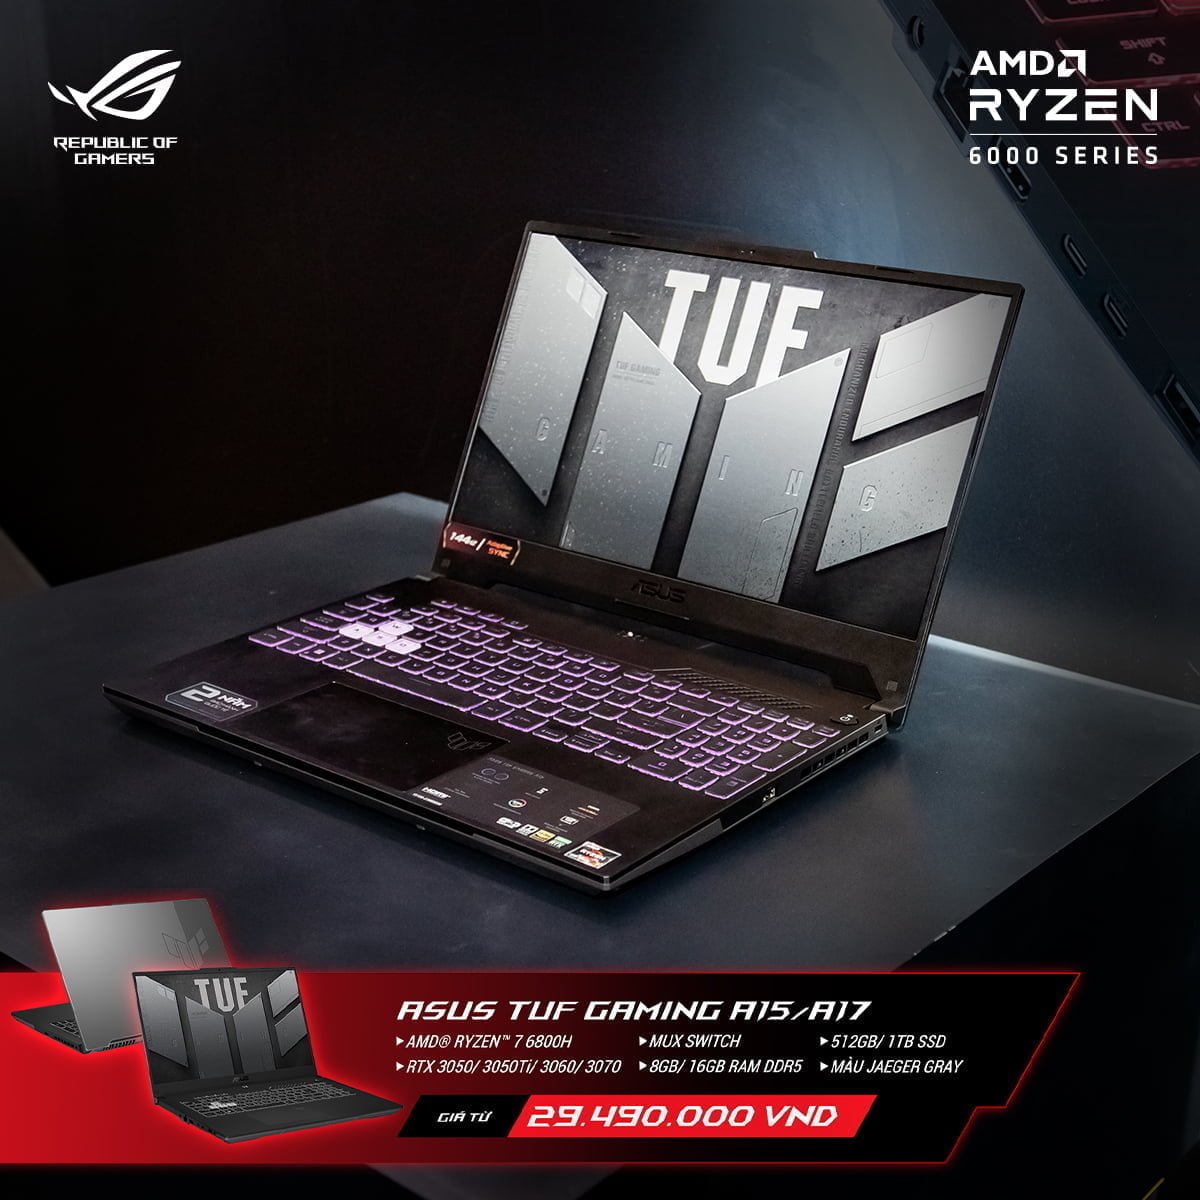 [PR] ASUS ROG công bố loạt sản phẩm laptop mới nền tảng AMD Ryzen 6000 Series tại thị trường Việt Nam - Image 19